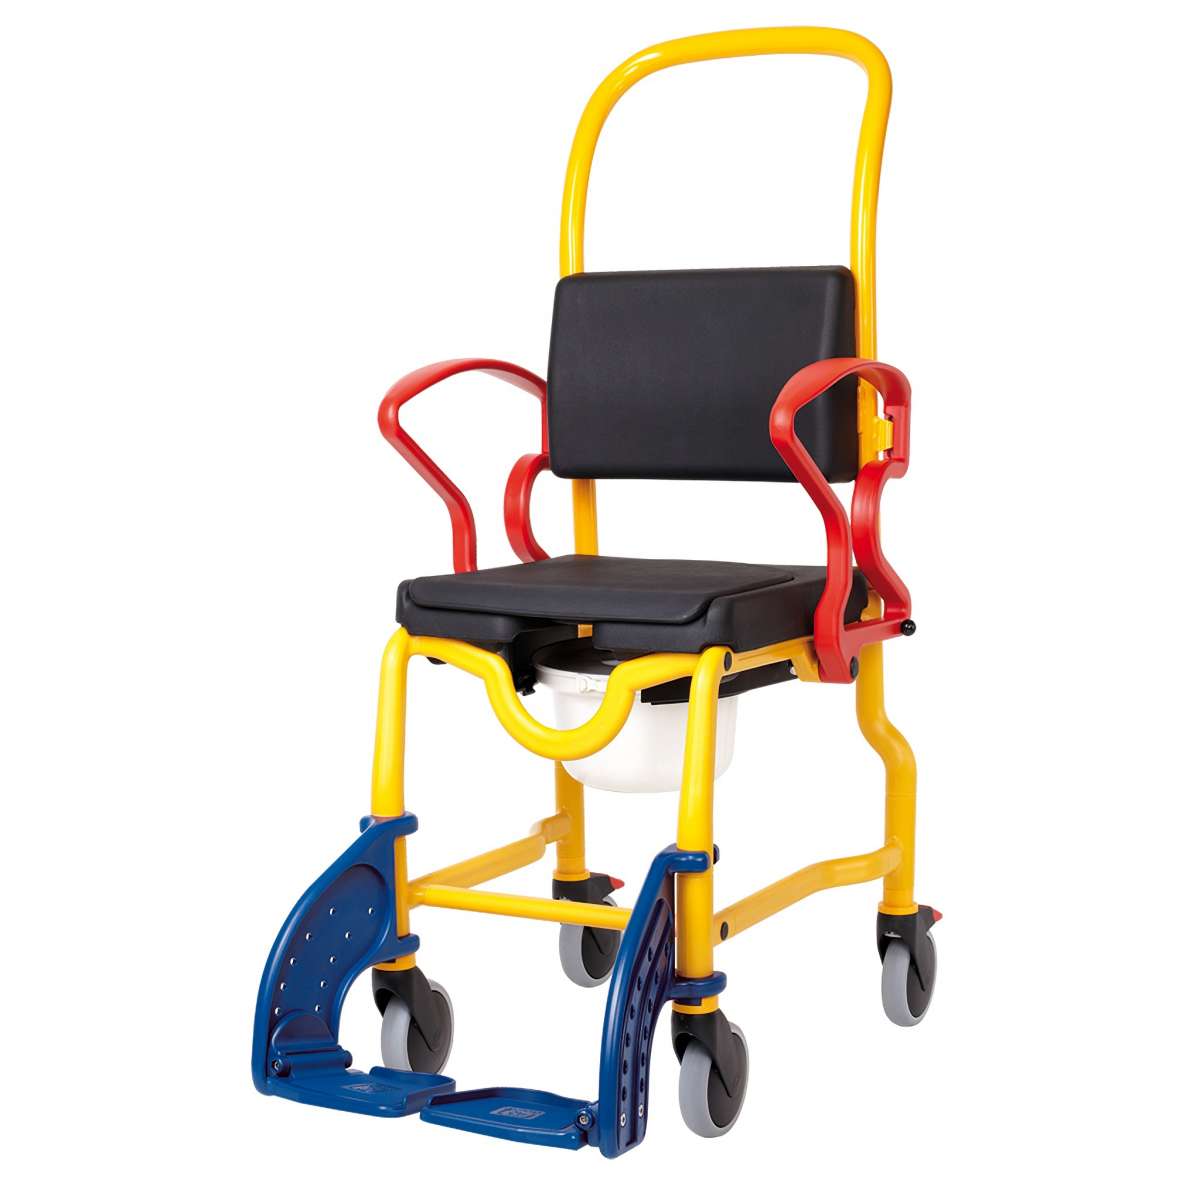 Кресло-стул с санитарным оснащением Аугсбург  339.03.97